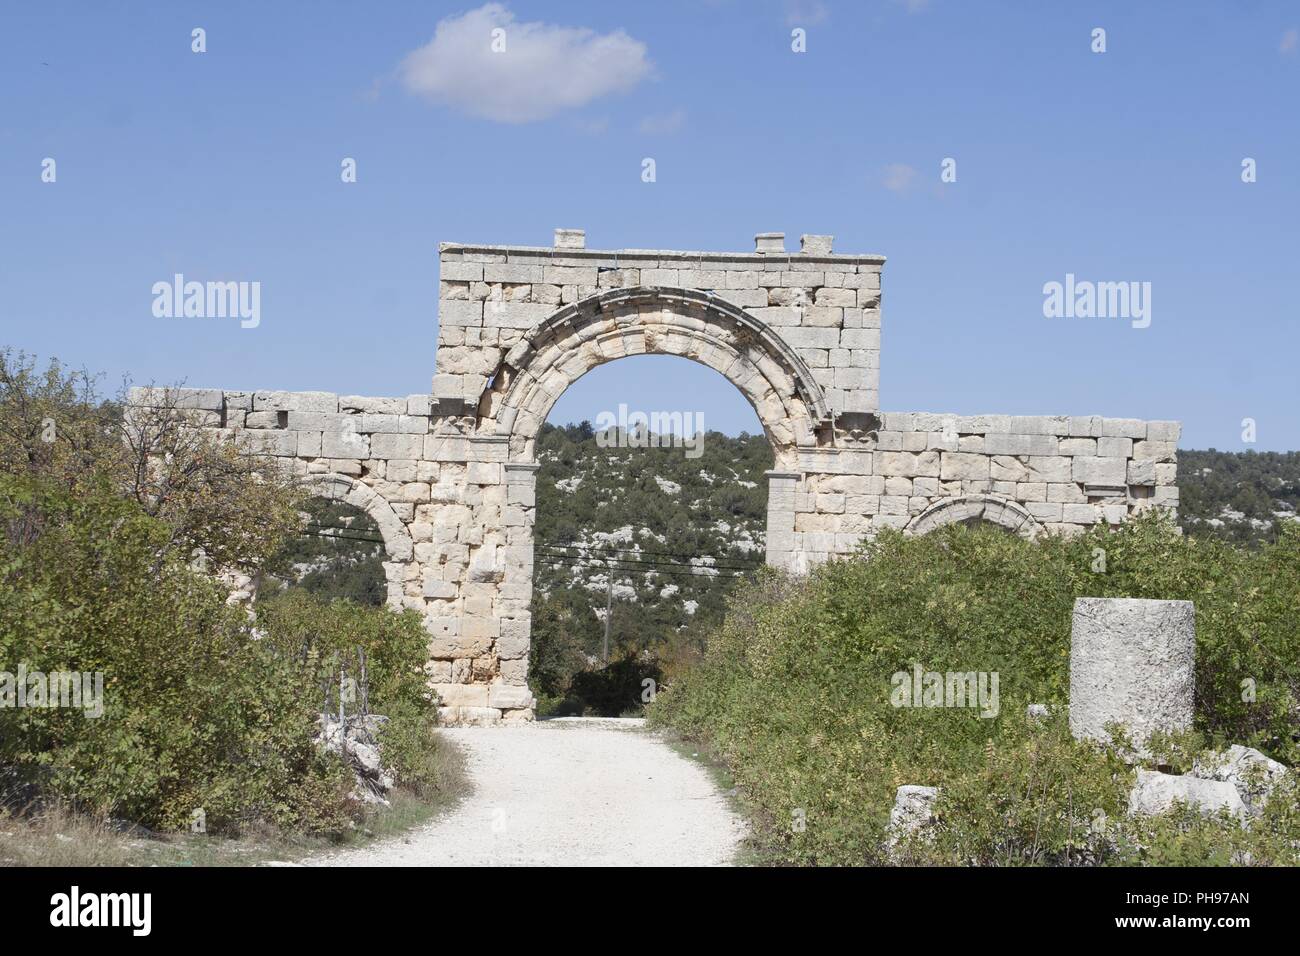 Adana Uzuncaburc Turchia - rovine di antiche città olba Foto Stock